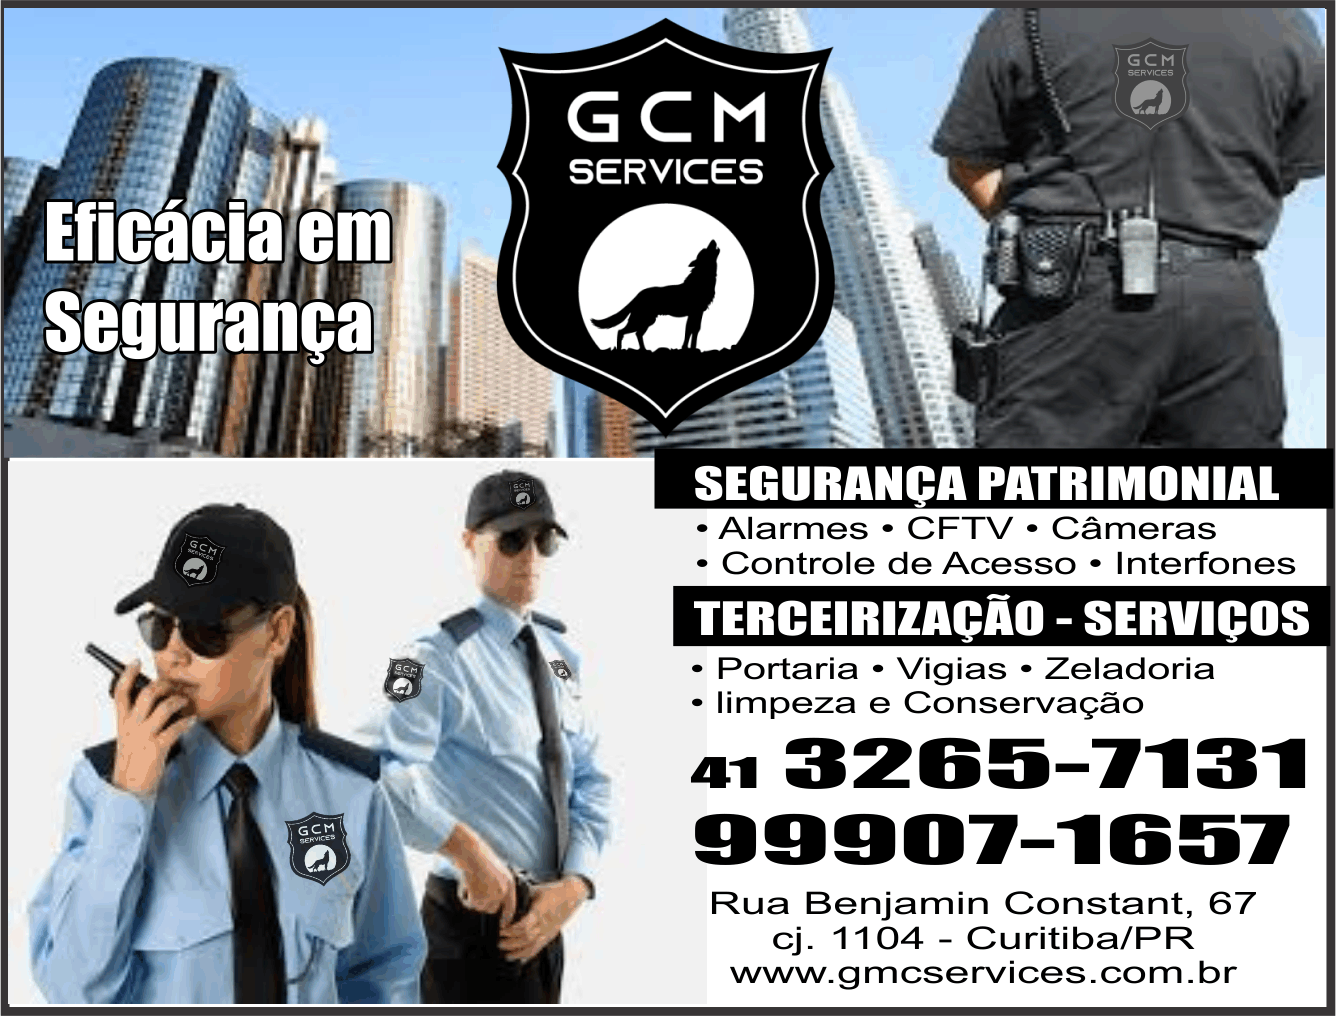  GCM Services Eficácia em Segurança      RUA BENJAMIN CONSTANT, 67, CURITIBA - PR  Fones: (41) 3265-7131 / (41) 99907-1657